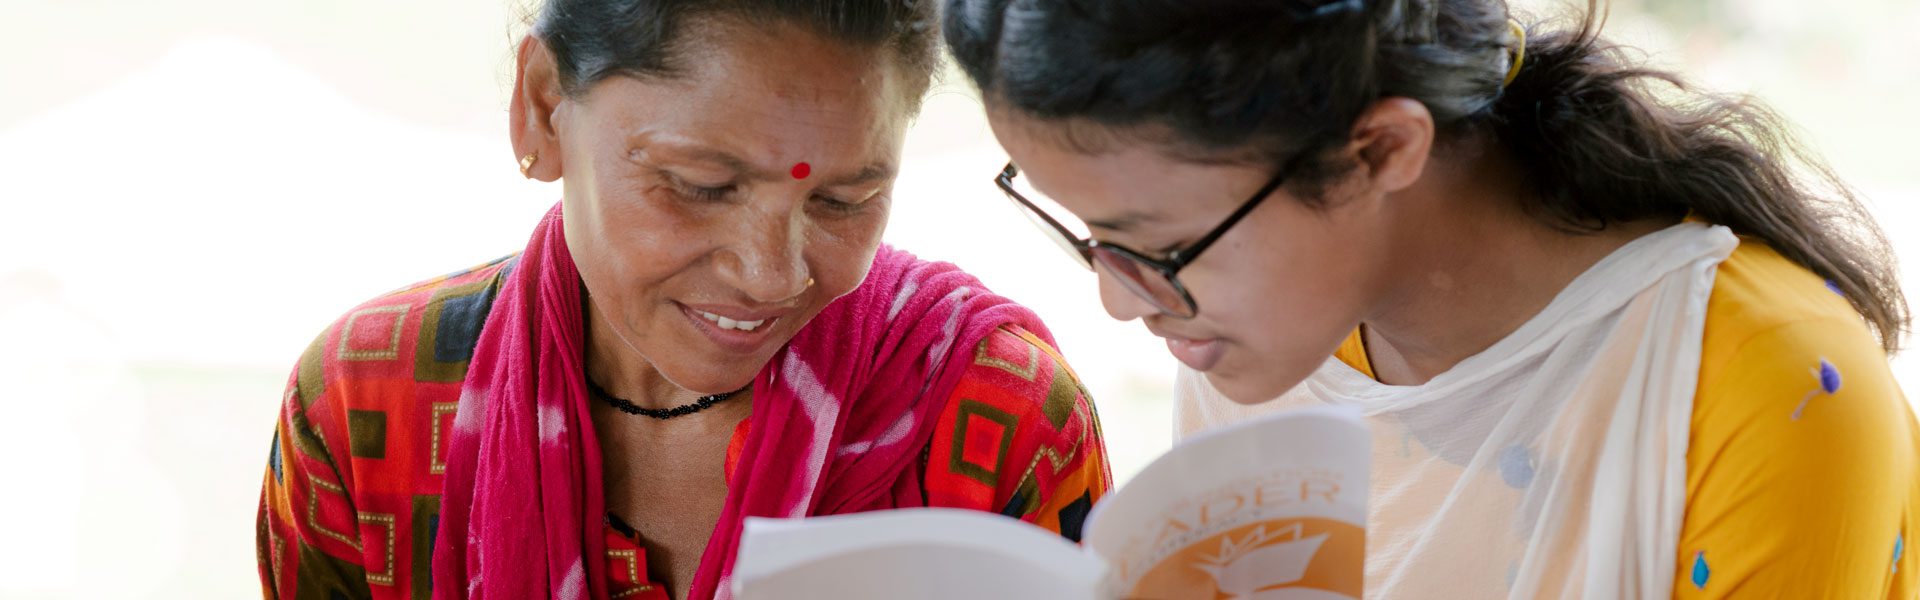 Zwei nepalesische Frauen schauen gemeinsam in ein Buch.